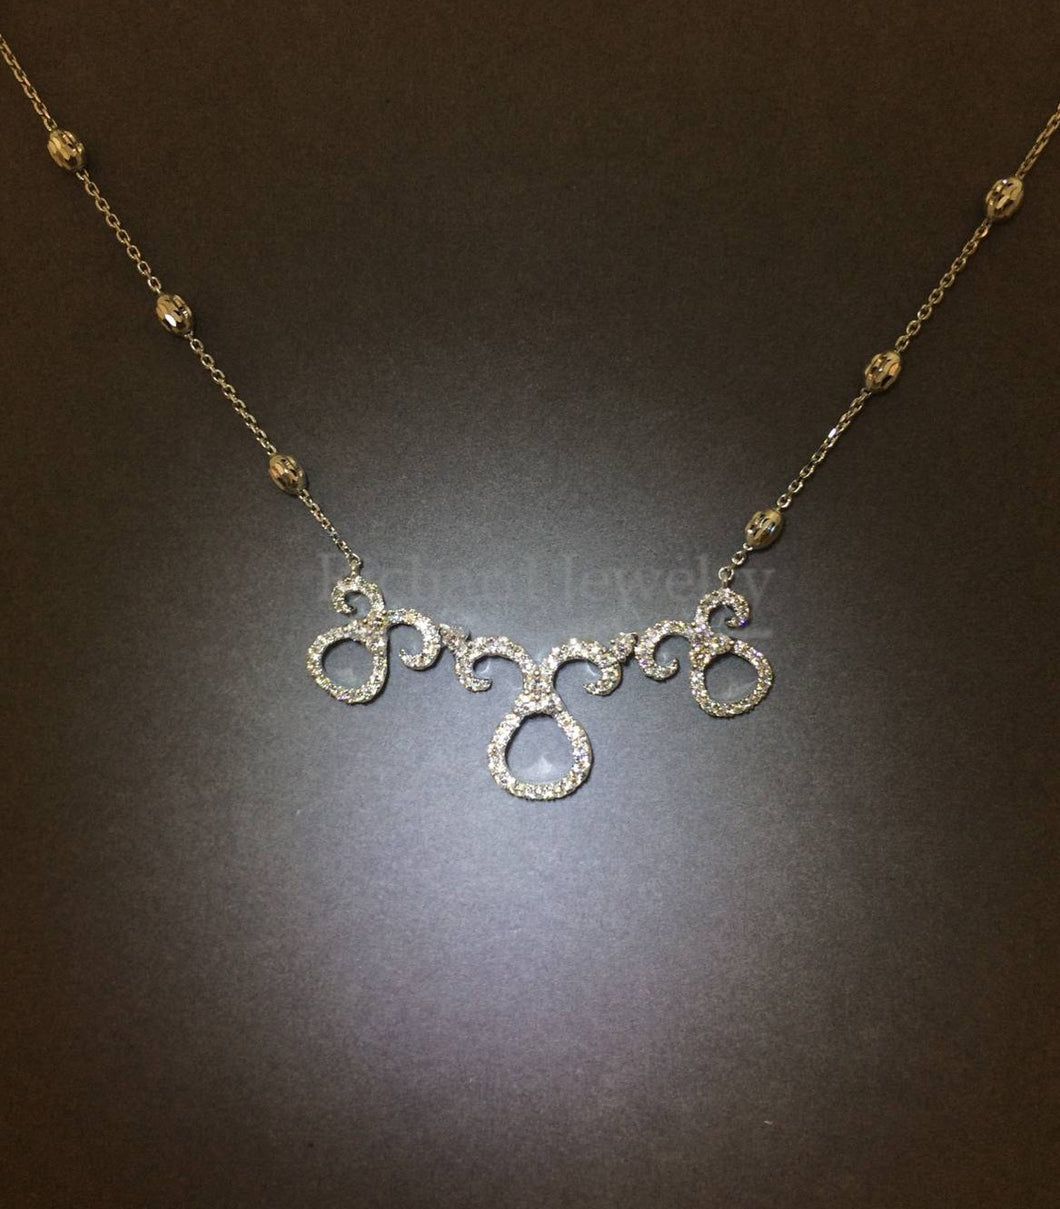 Tri-Halo Diamond Necklace, Richard Jewelry